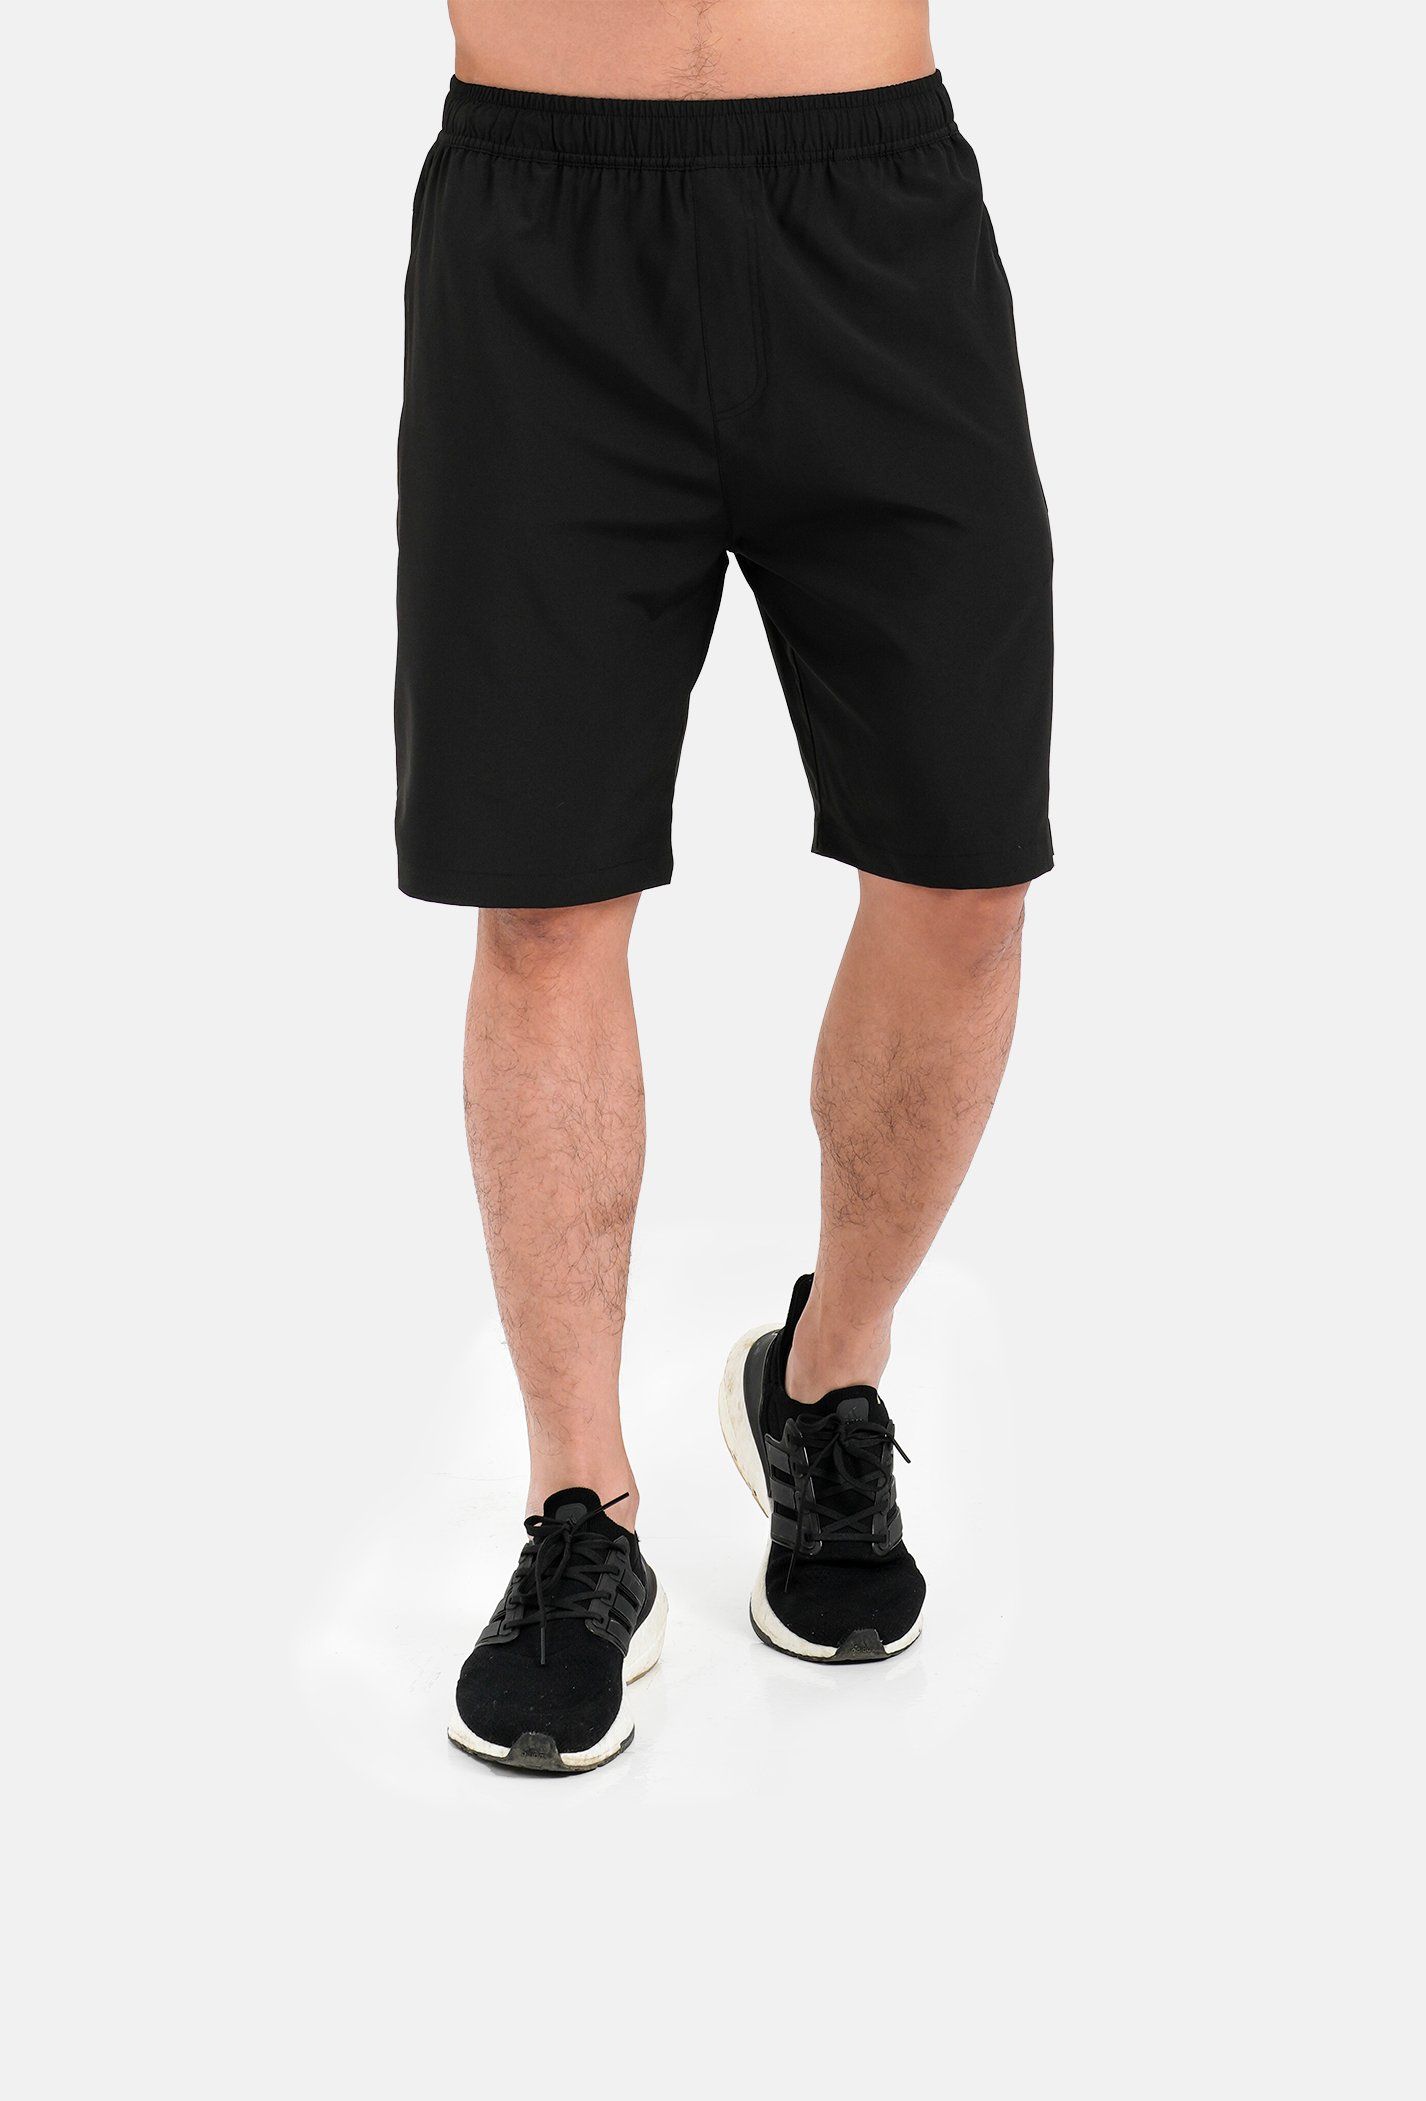 Quần thể thao nam Max Ultra Shorts (có thêm túi khoá sau) 